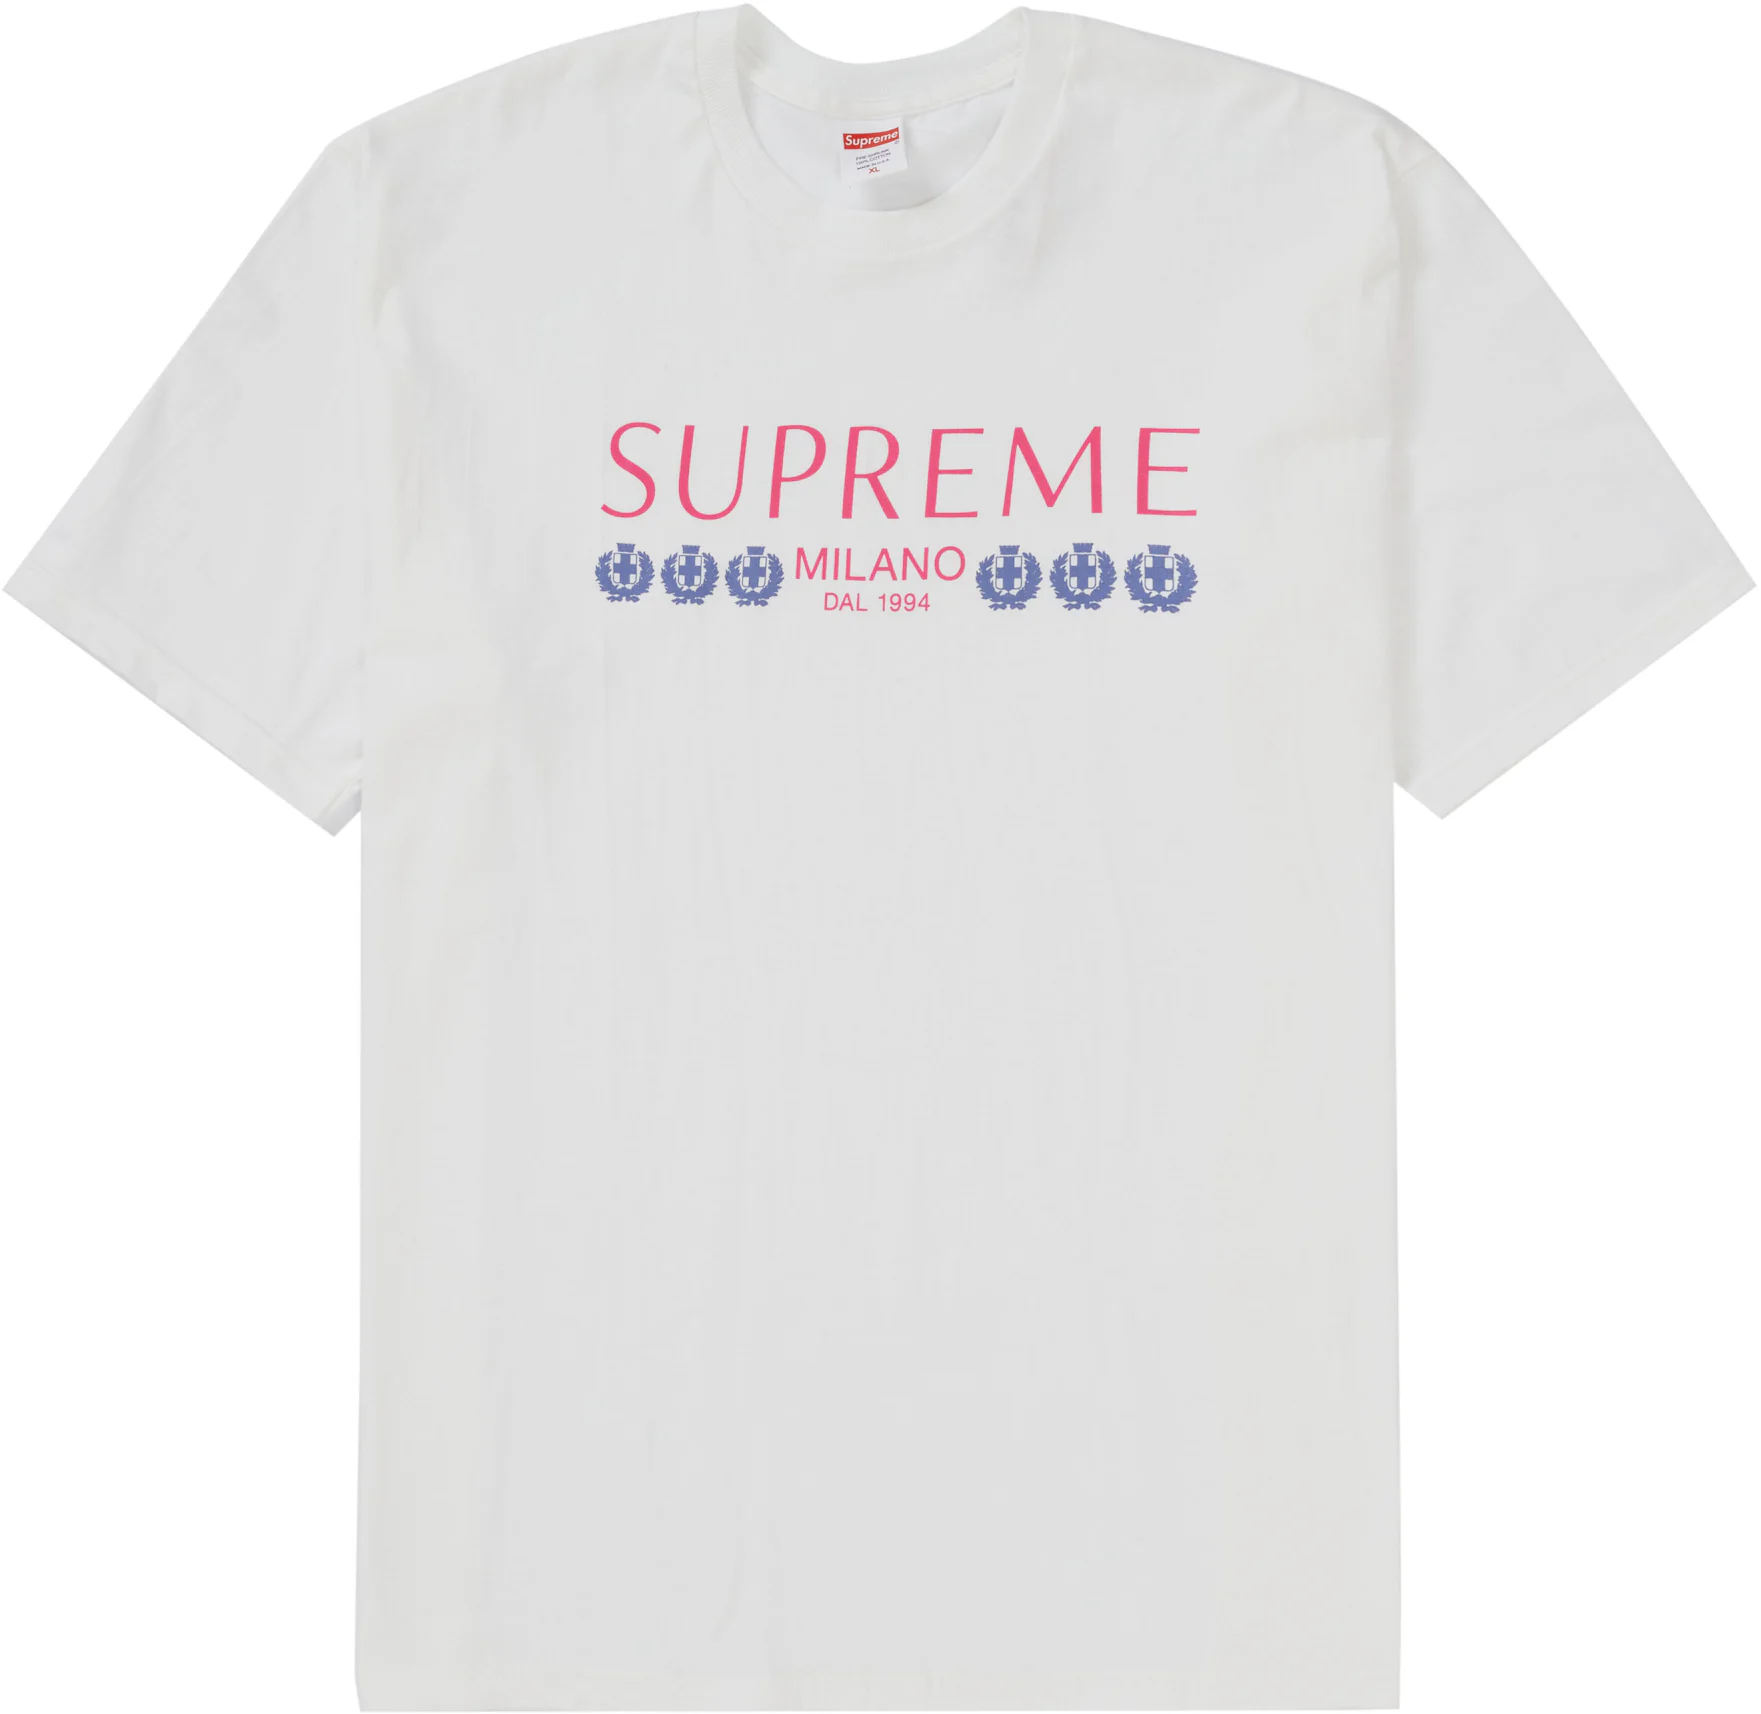 Supreme Milan Box Logo Tee White Men's - SS21 - US